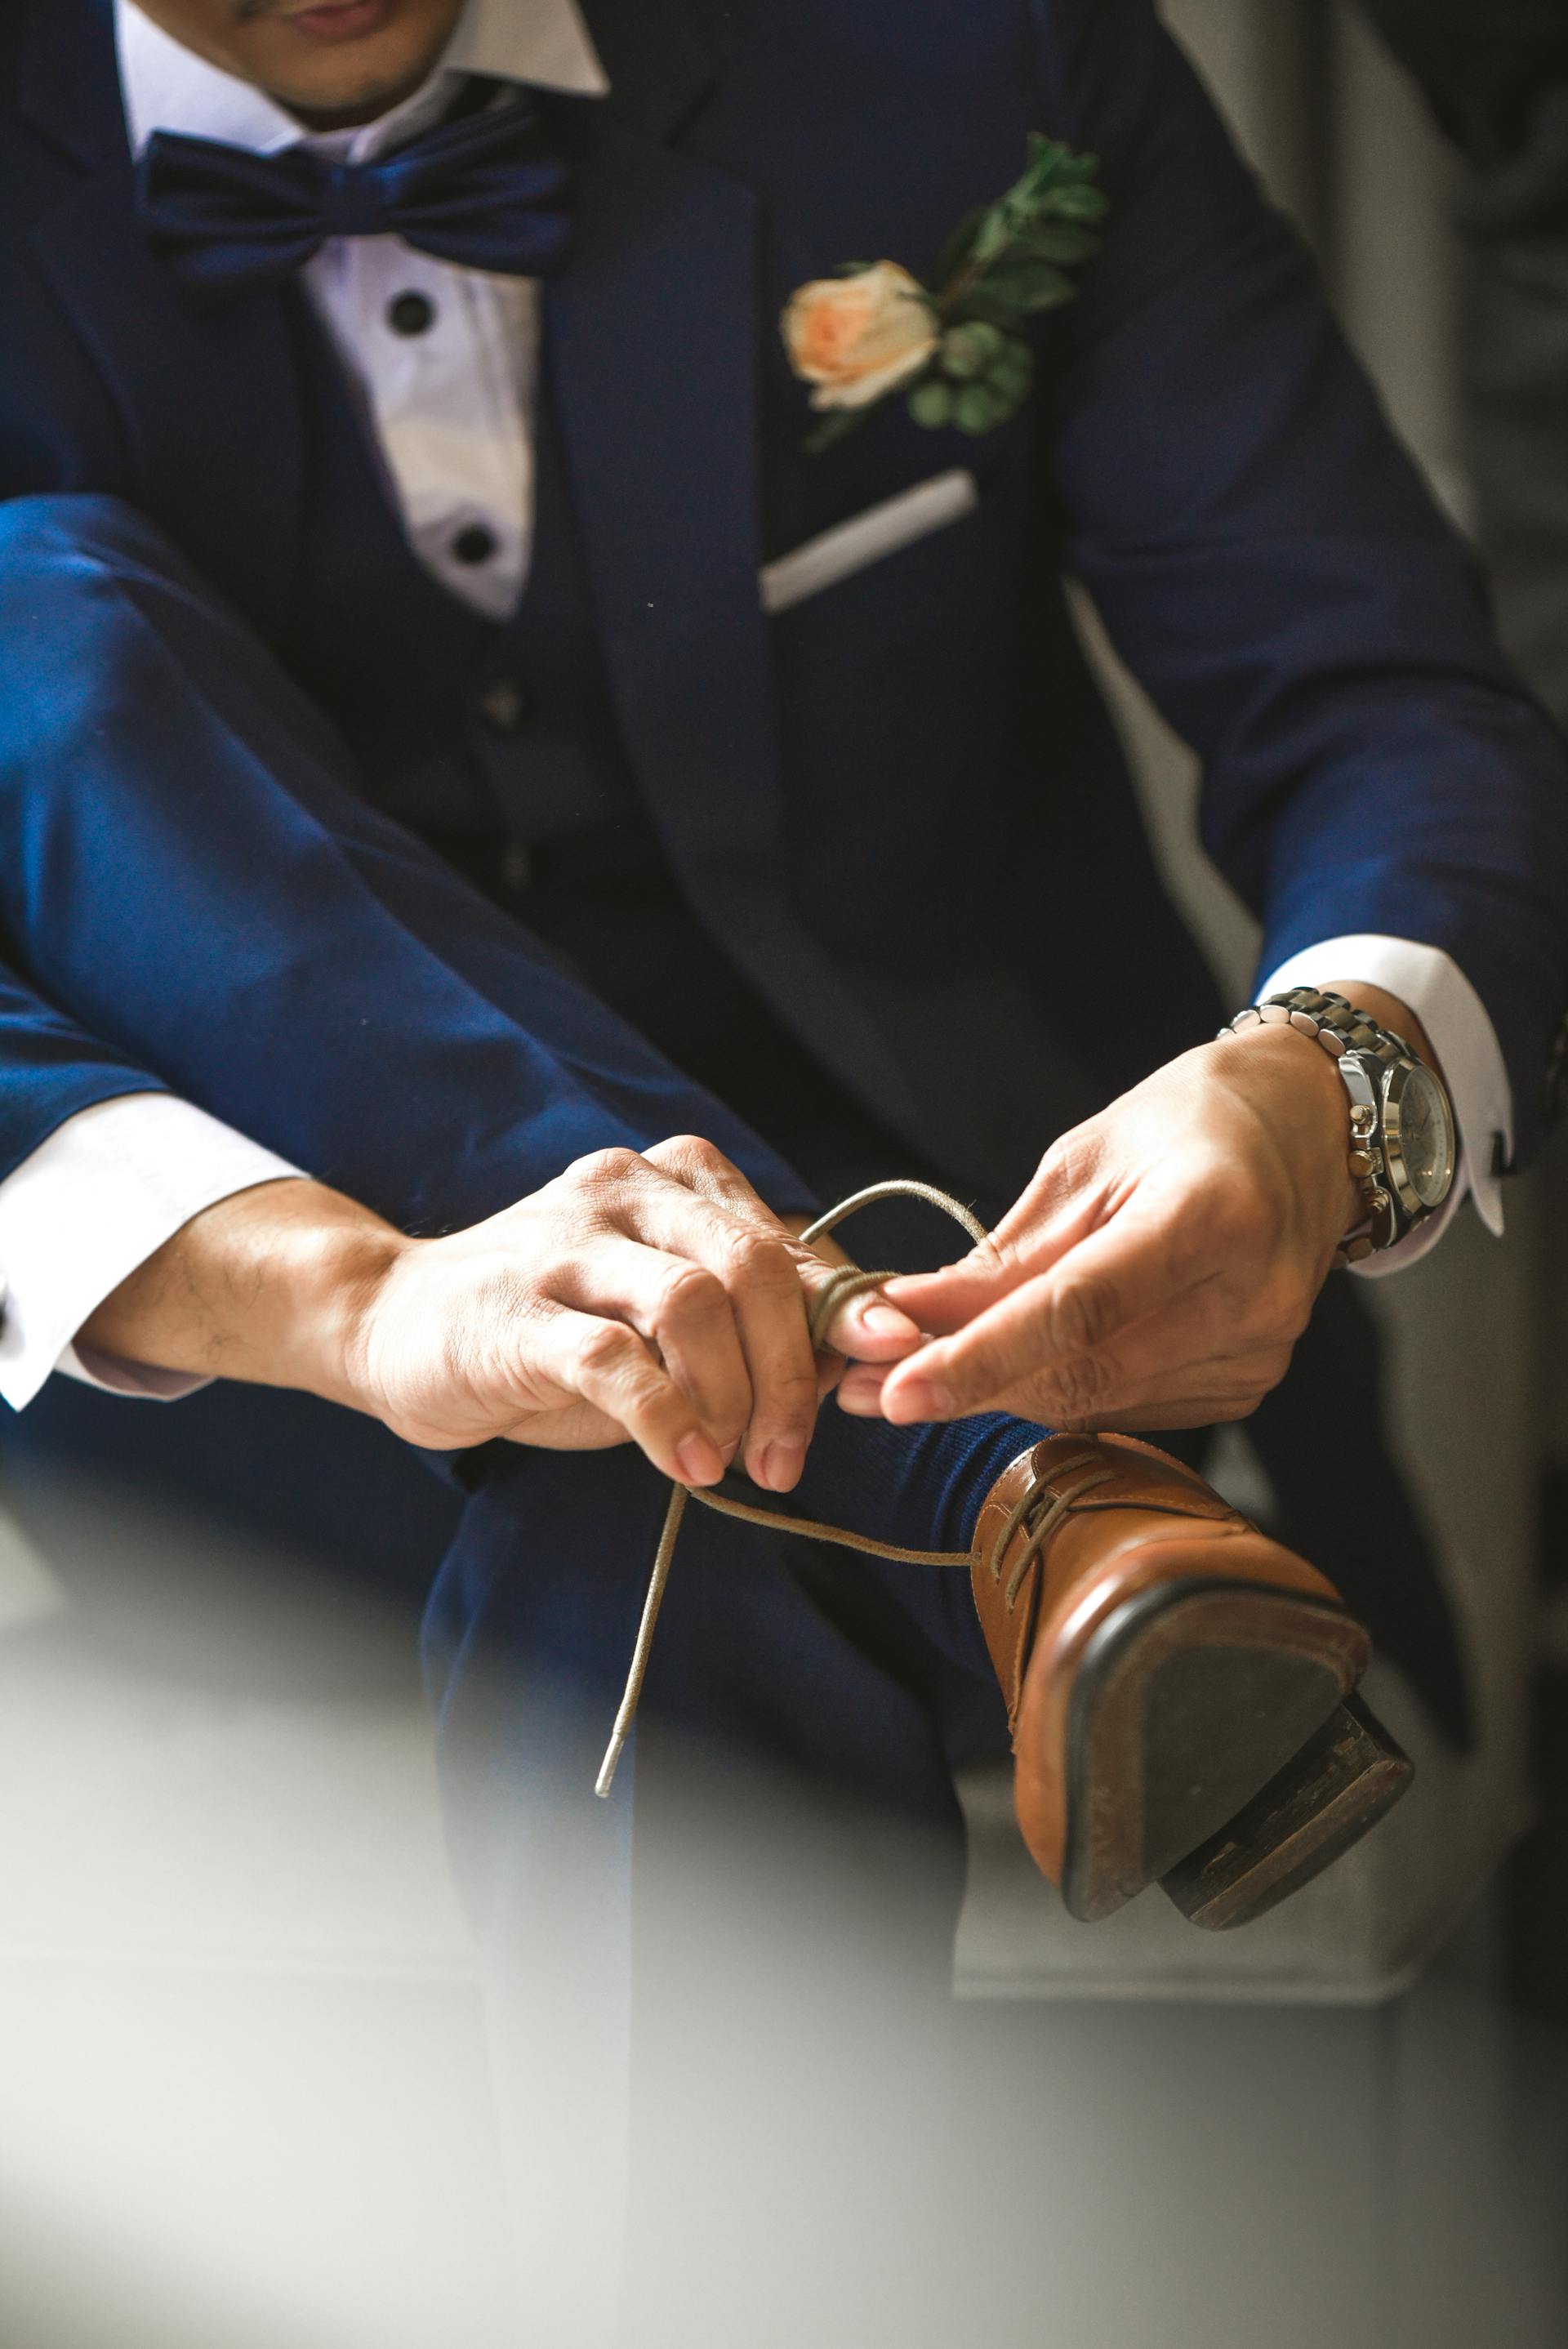 A groom tying his shoelaces | Source: Pexels